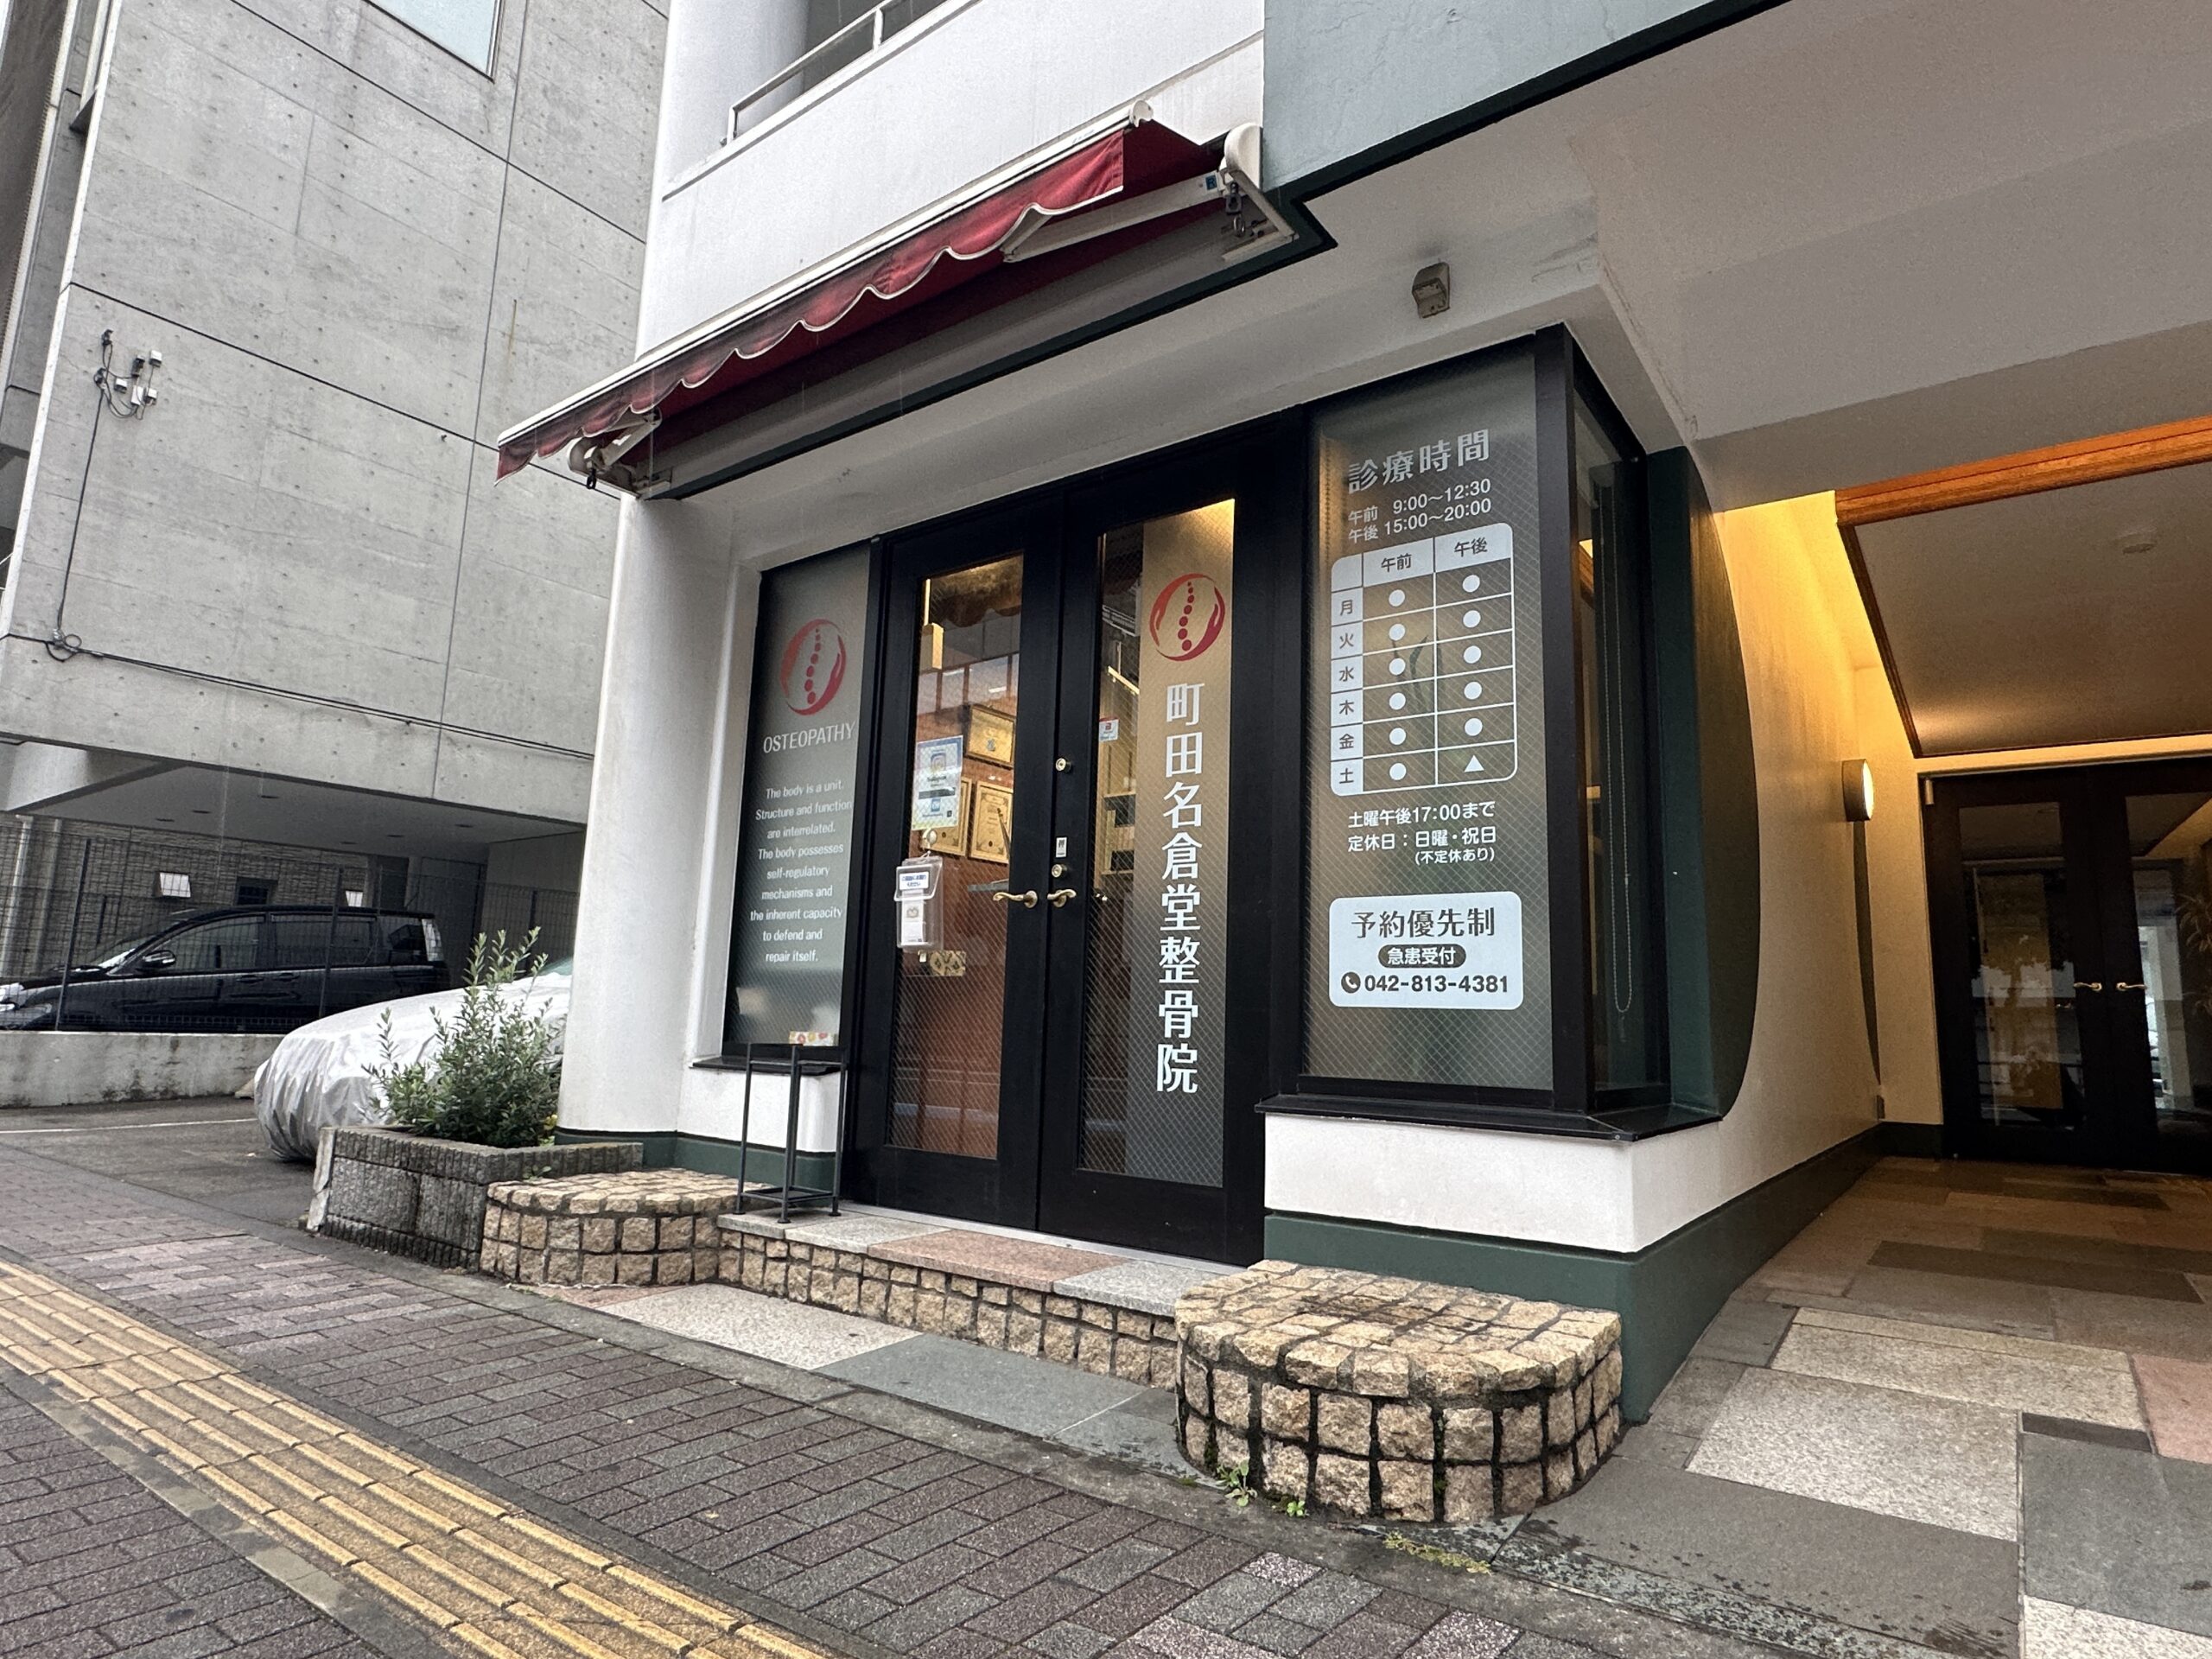 大通りに面したわかりやすい入口です。入口には町田名倉堂整骨院のロゴが目印です。店舗入り口。